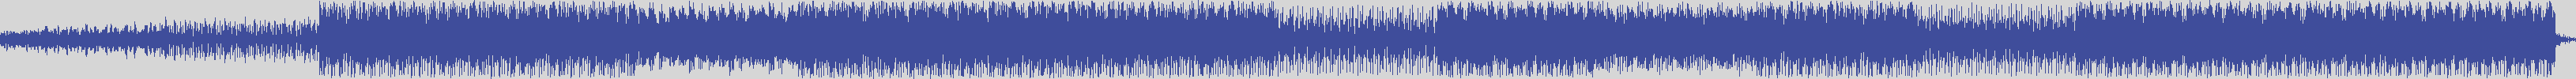 noclouds_chillout [NOC112] Pp 1 - Hous [Original Mix] audio wave form